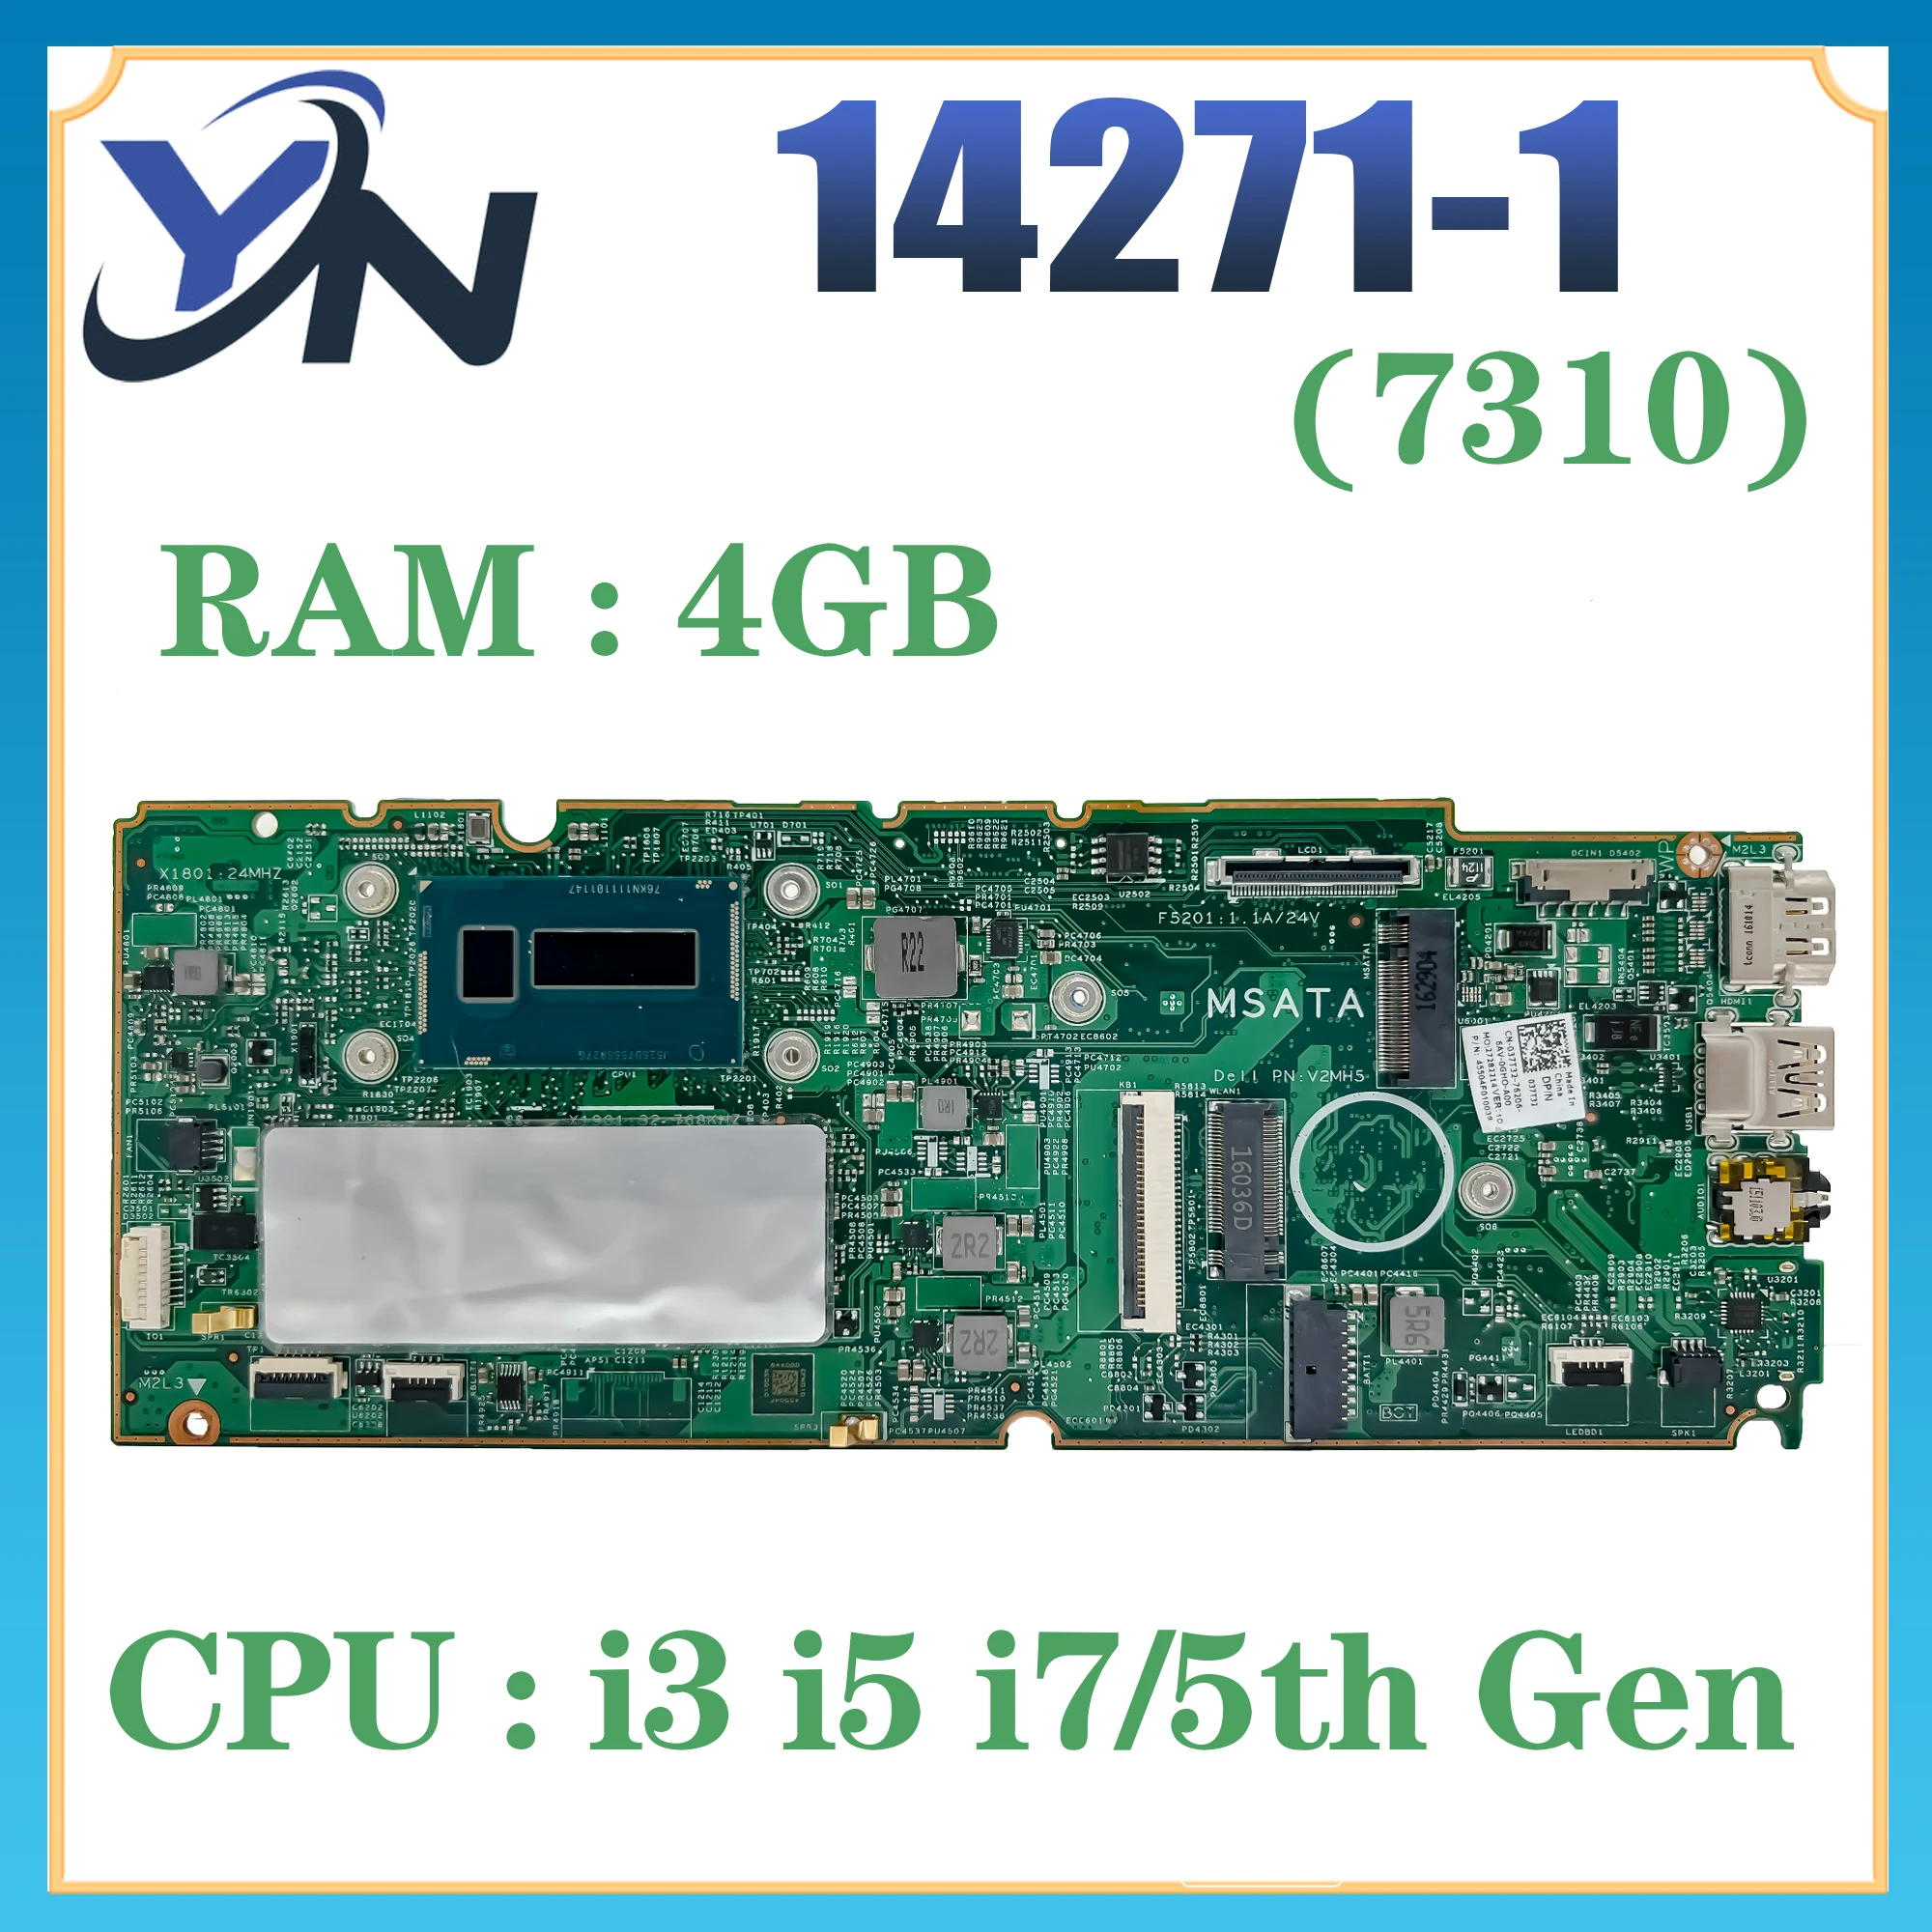 14271-1 Материнская плата для ноутбука Dell Chromebook 13 7310 Материнская плата i3 i5 i7 5-го поколения / 4 ГБ 100% ТЕСТ В НОРМЕ0